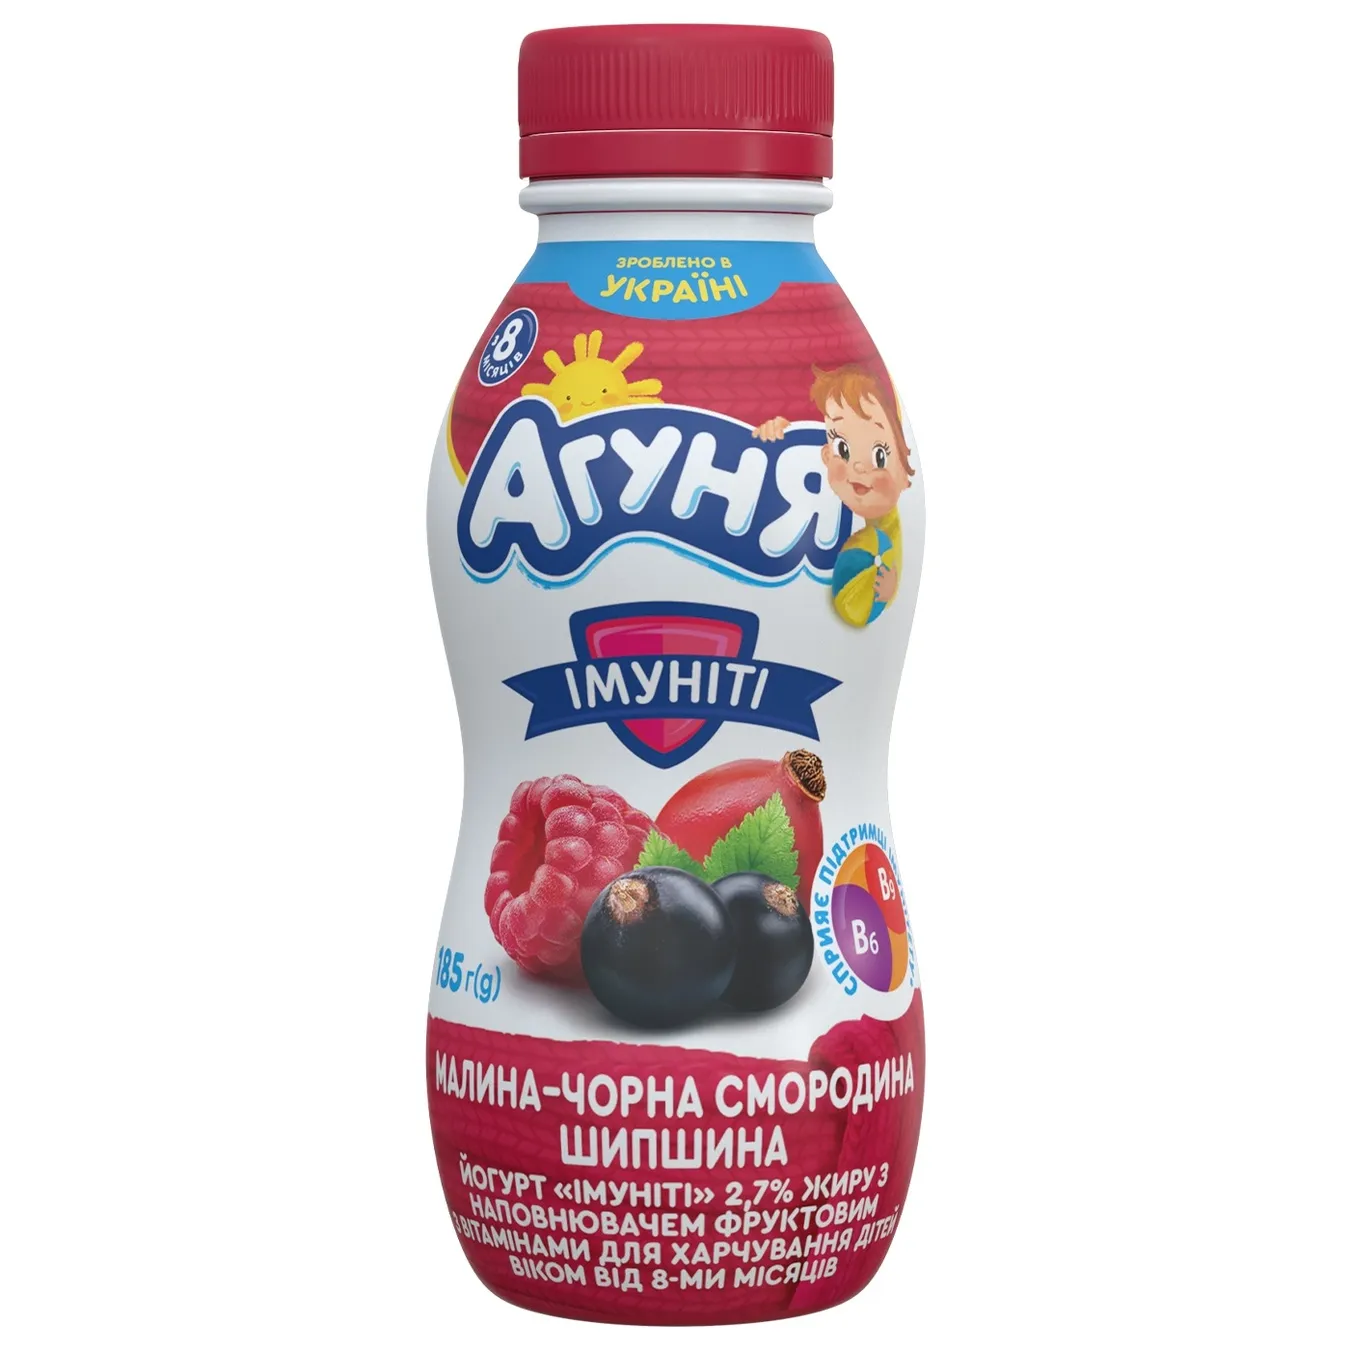 Yogurt Agunya Immunity Raspberry-blackcurrant-rosehip 2.7% 185g